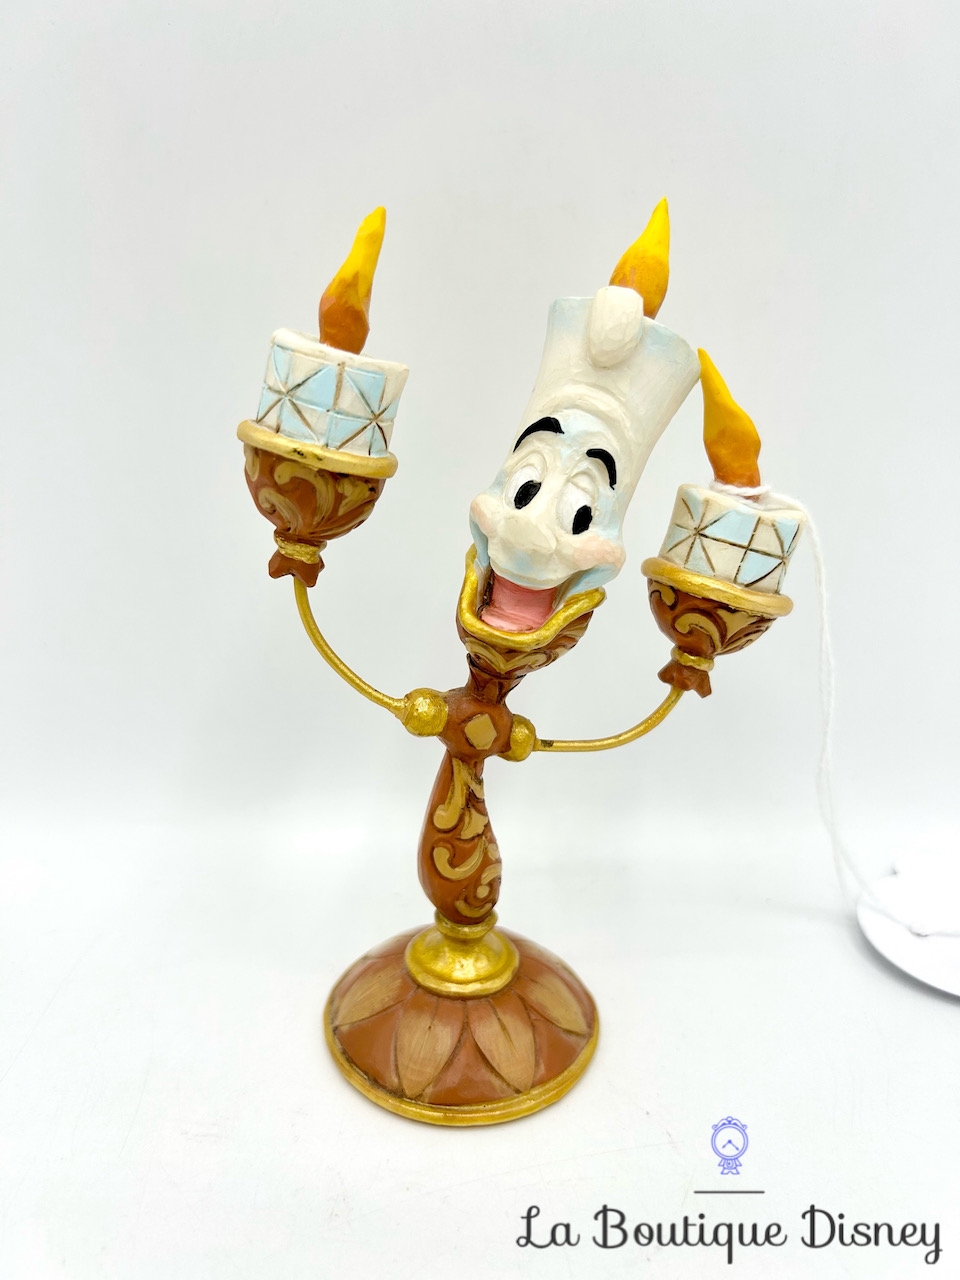 Figurine Jim Shore Lumière Ooh La La Disney Traditions Showcase Collection La Belle et la Bête 4049620